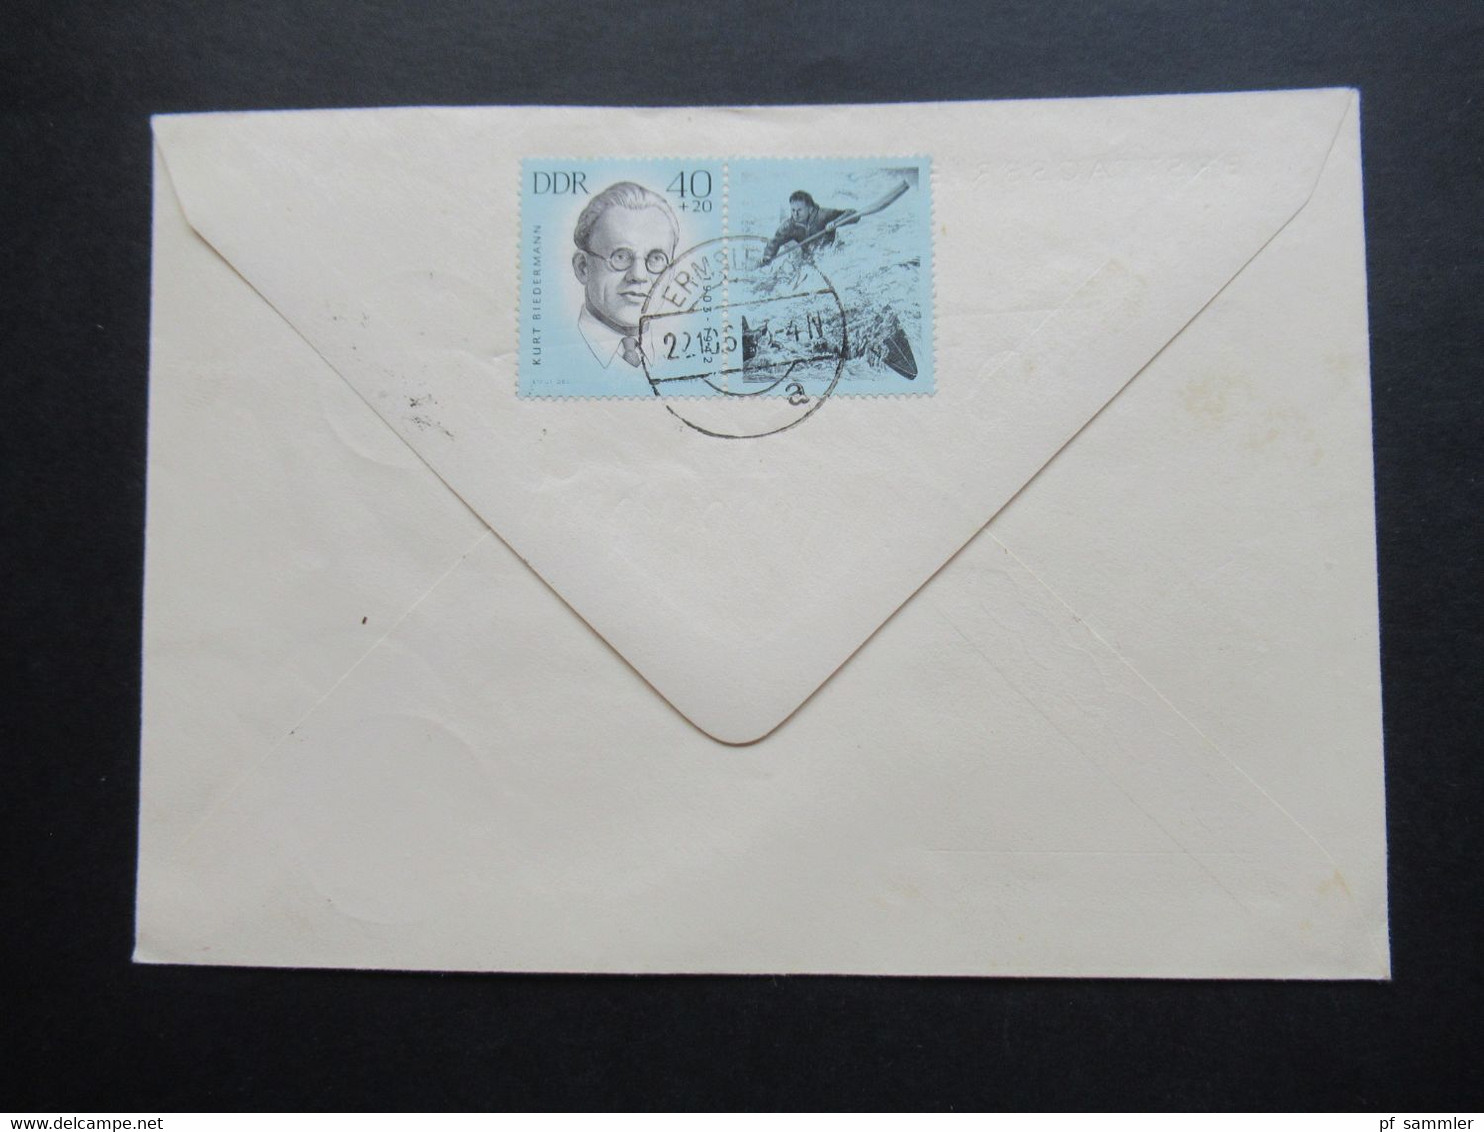 DDR 1963 Ersttagsbrief Umschlag Mit Tagesstempel Ermsleben MiF Zusammendrucke Ermorderte Antifaschistische Sportler II - Covers & Documents